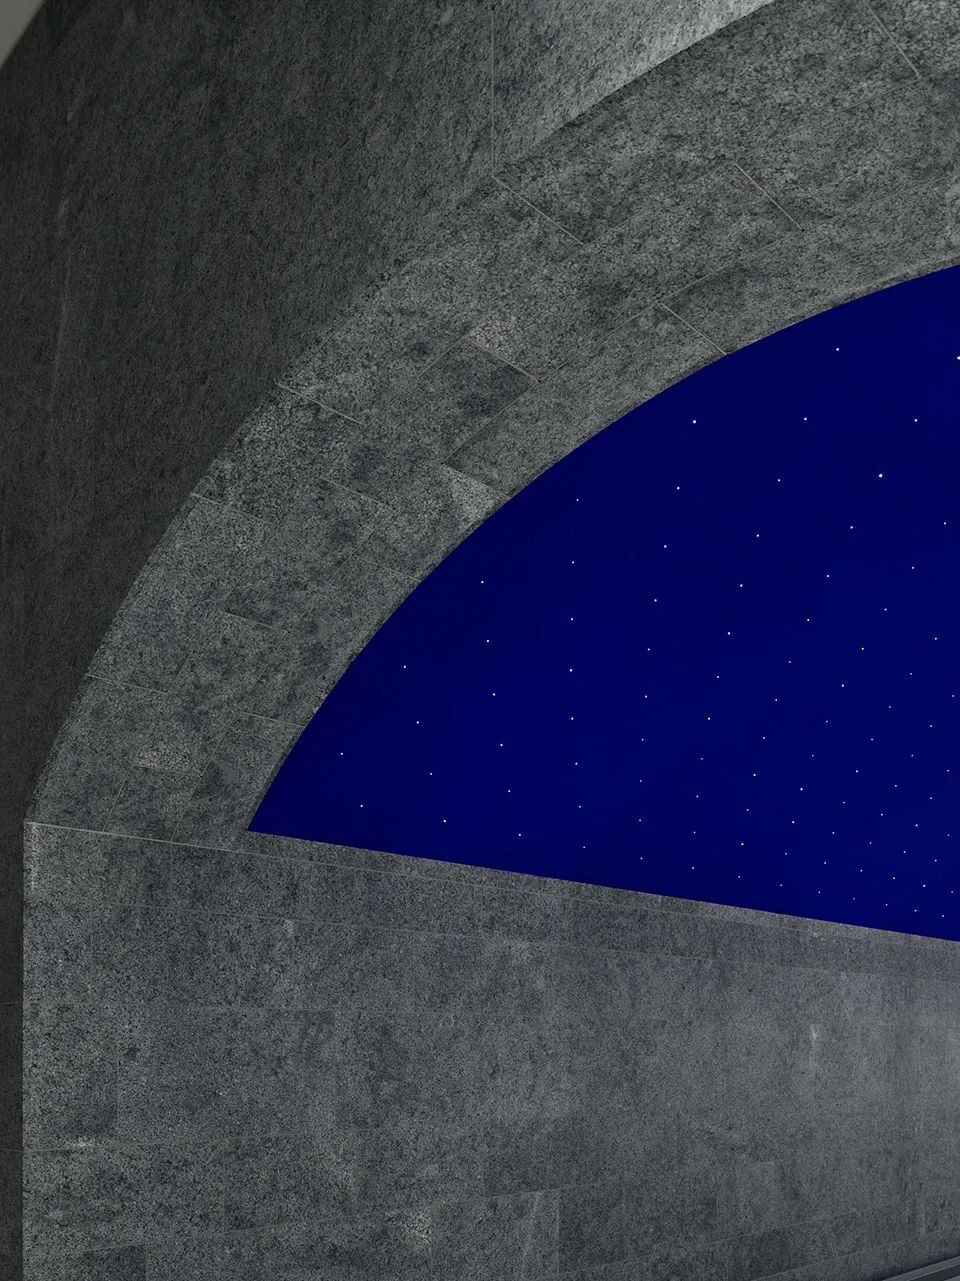 6662盞燈點亮了穹頂，創造出一片迷人的星空©Stefan Müller，柏林博物館島地鐵站U-Bahnstation Museumsinsel／Max Dudler